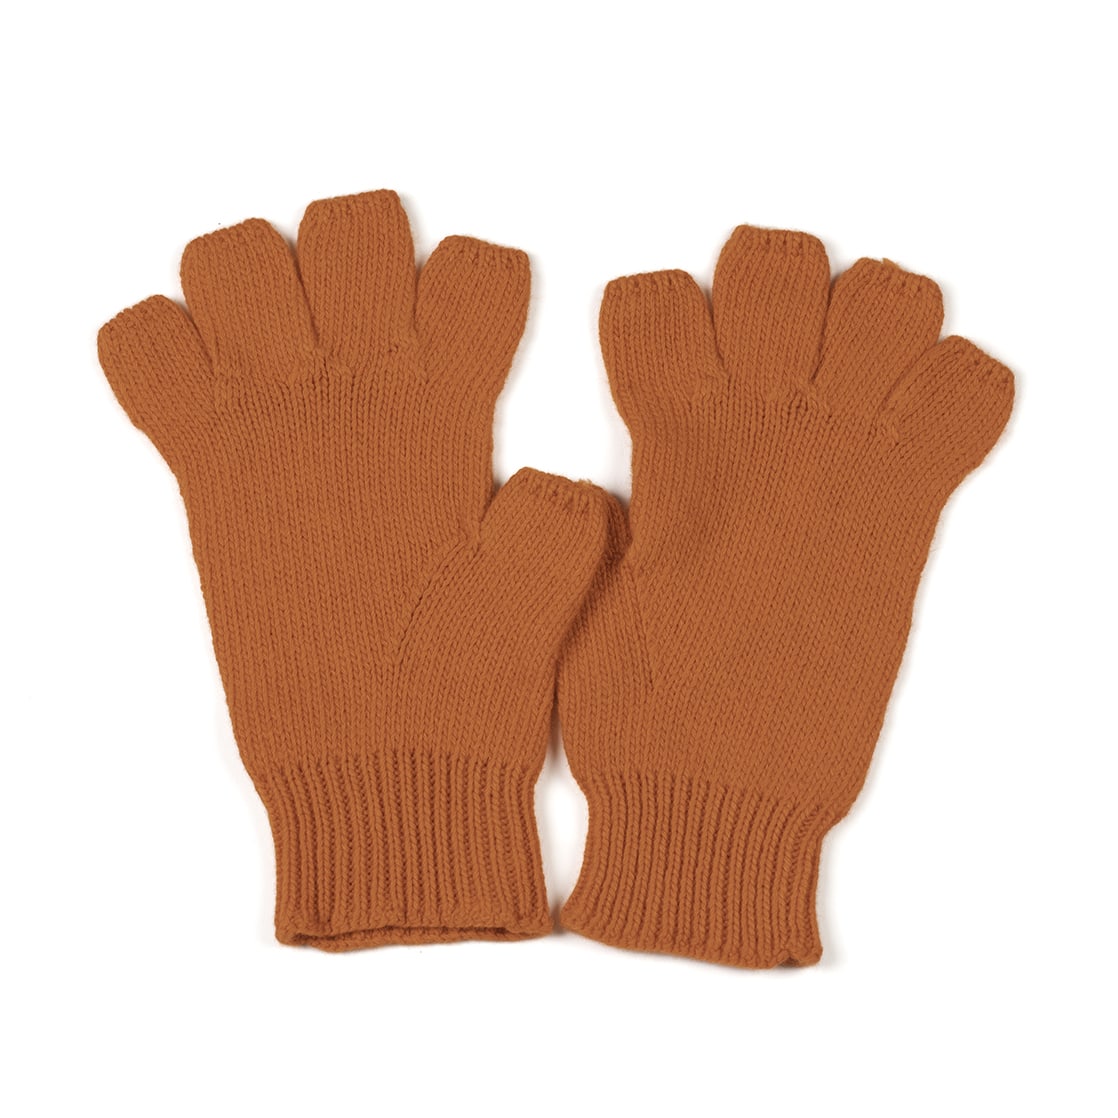 The Men's Fingerless Gloves Persimmon